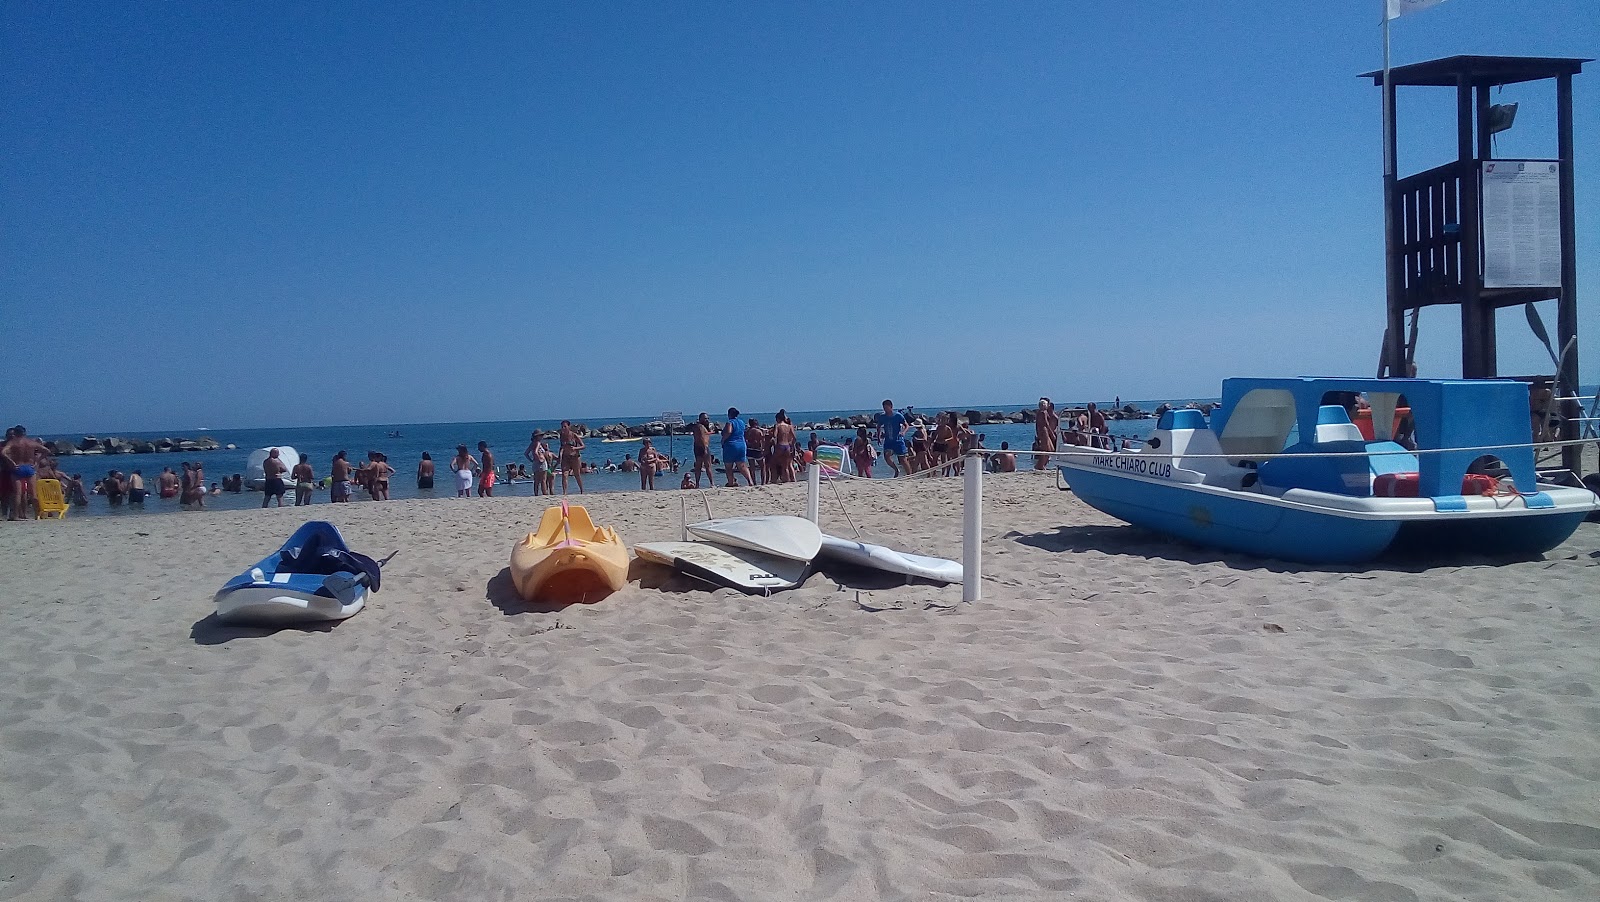 Foto af Spiaggia di Campomarino - populært sted blandt afslapningskendere